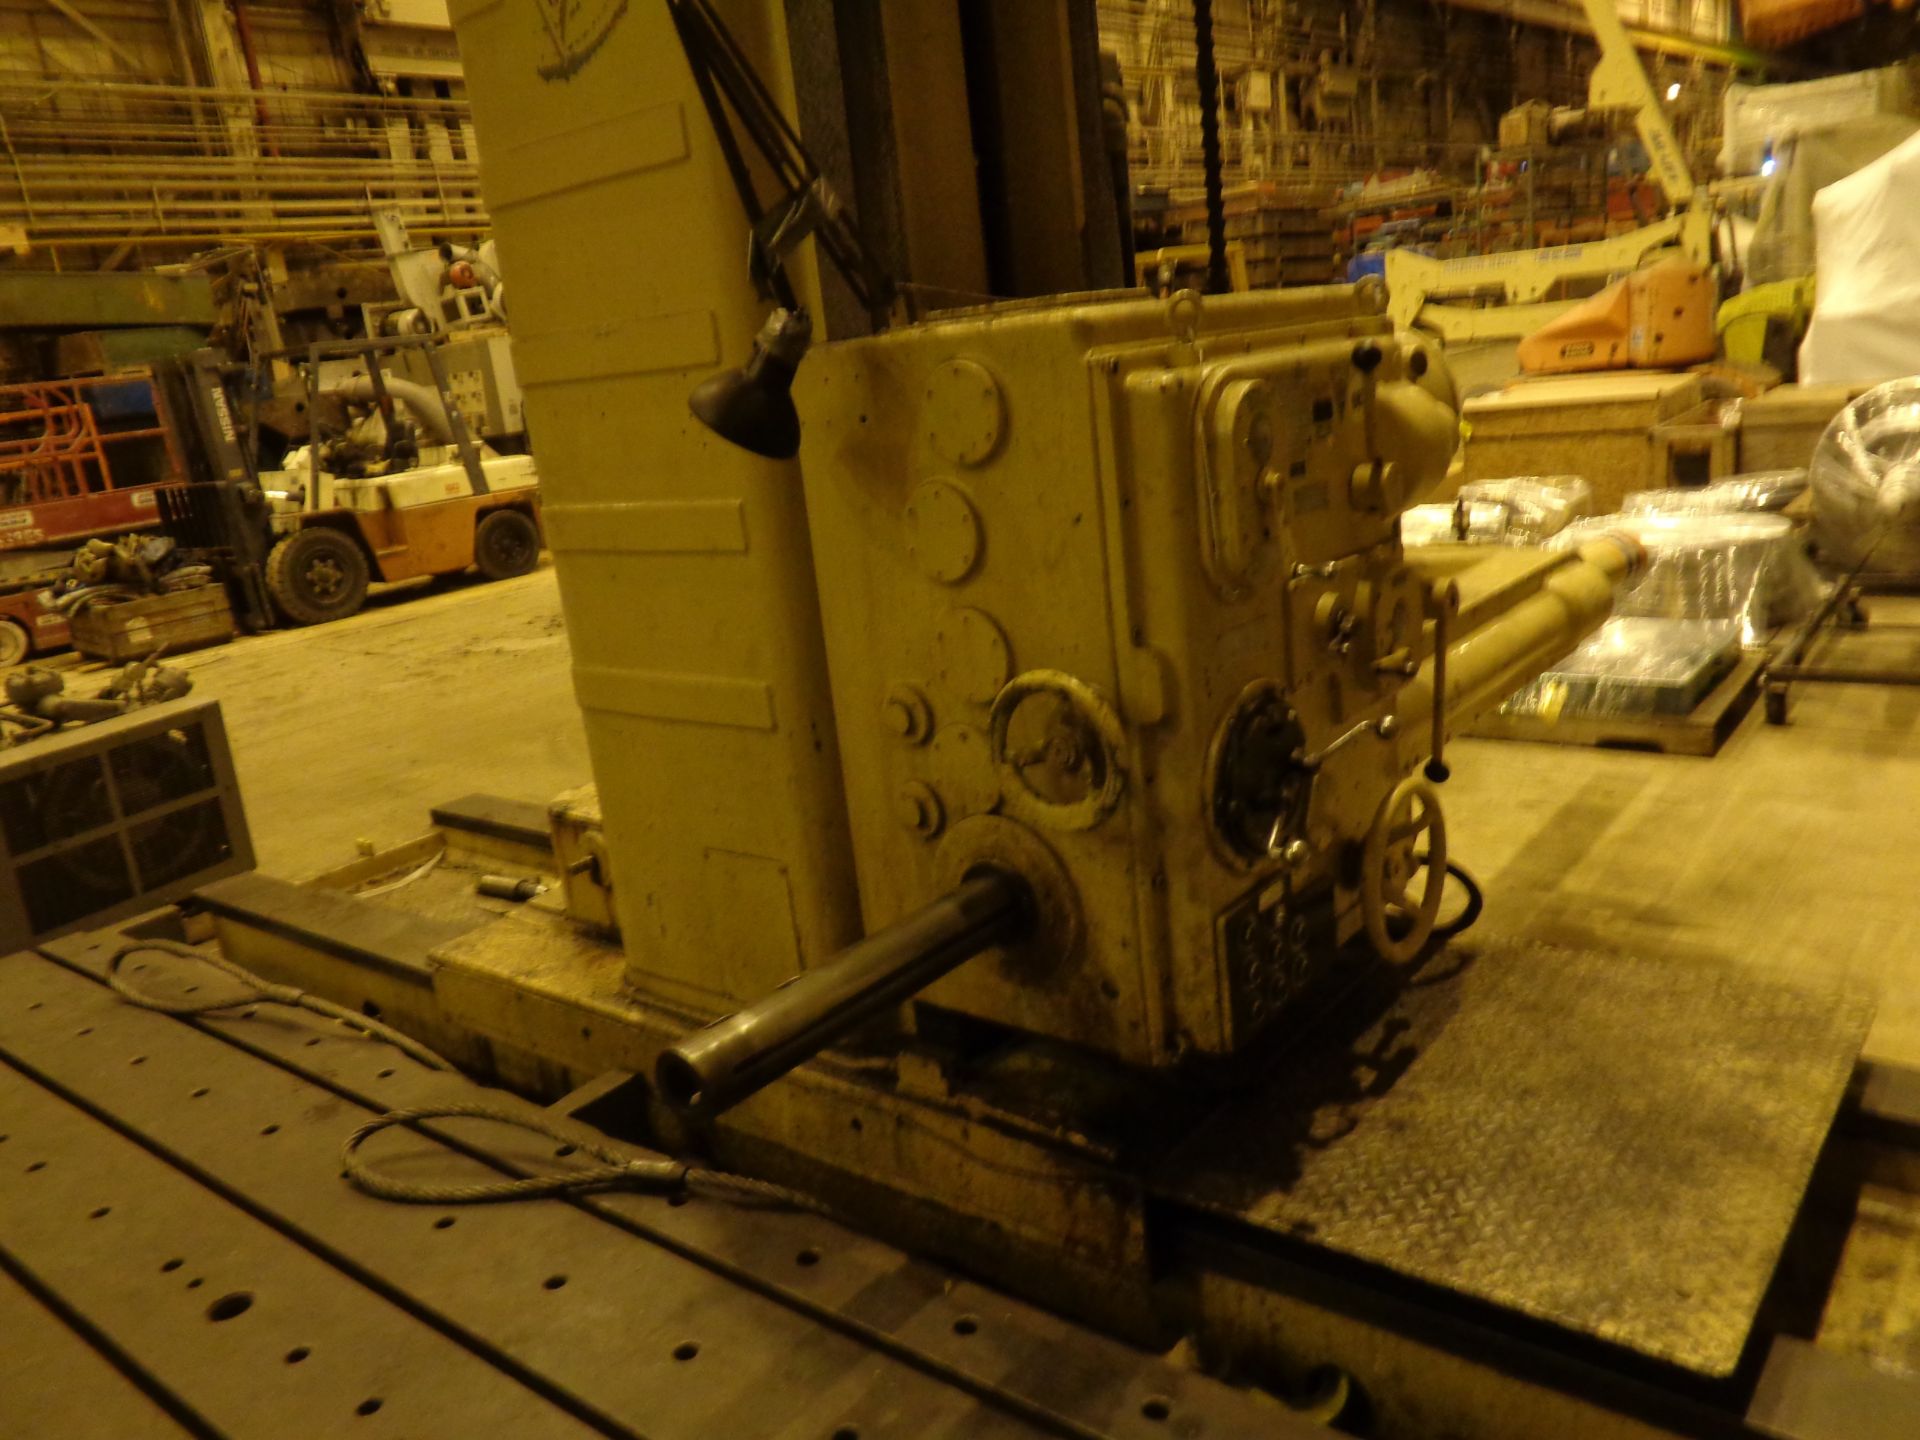 Kaukauna Floor Type Horizontal Boring Mill Milling Machine - Image 8 of 23